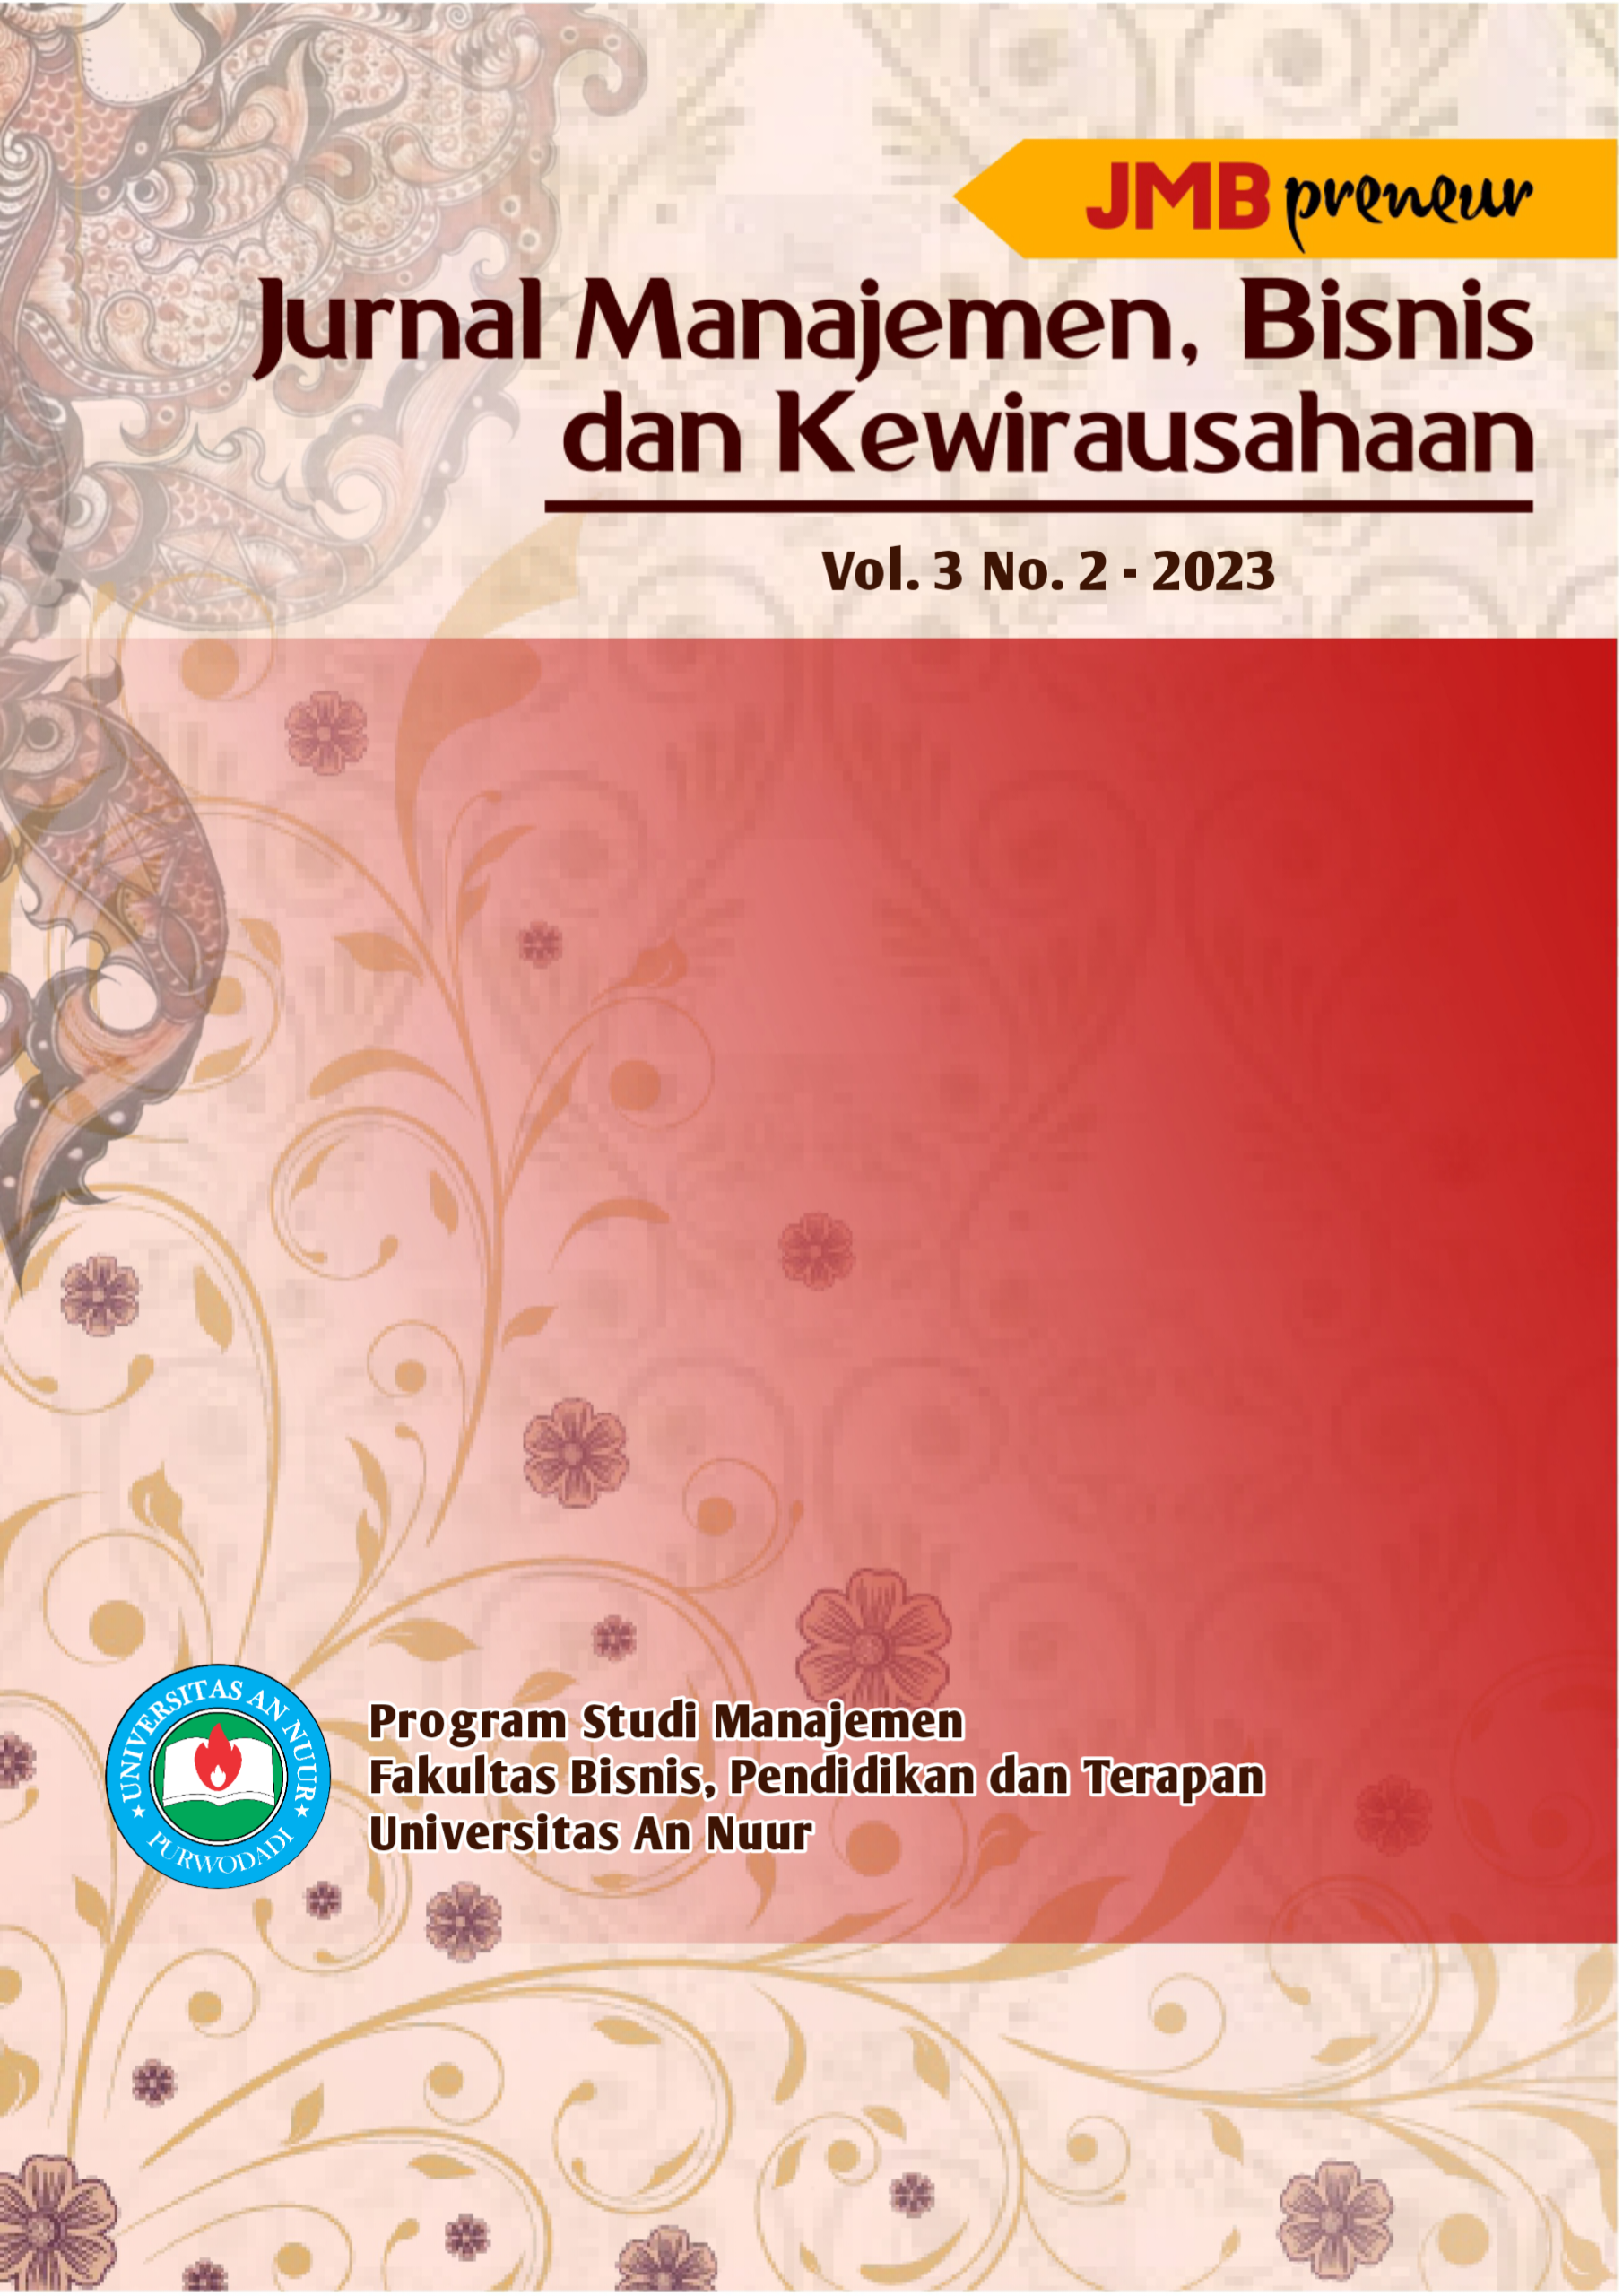 					View Vol. 3 No. 02 (2023): Jurnal Manajemen, Bisnis, dan Kewirausahaan
				